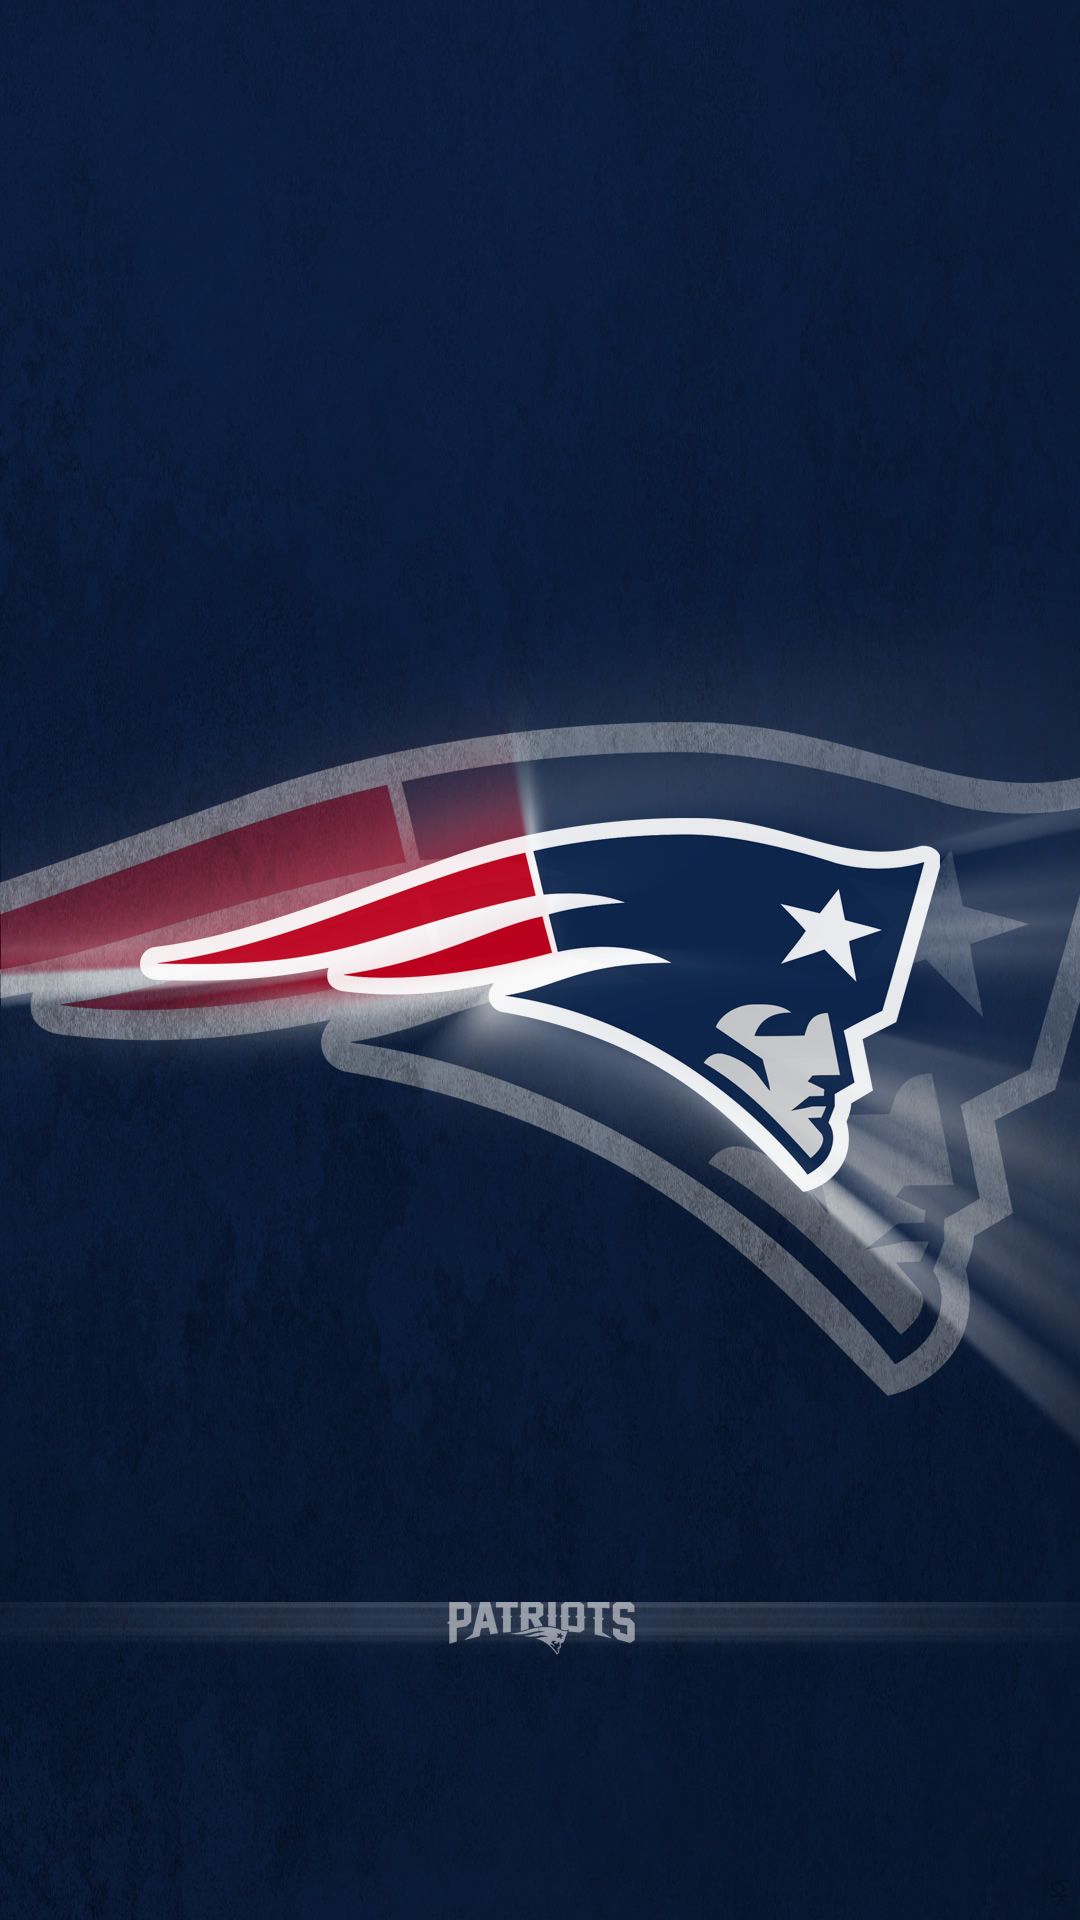 New Superbowl 2015 or Superbowl XLIX wallpaper - New England Patriots